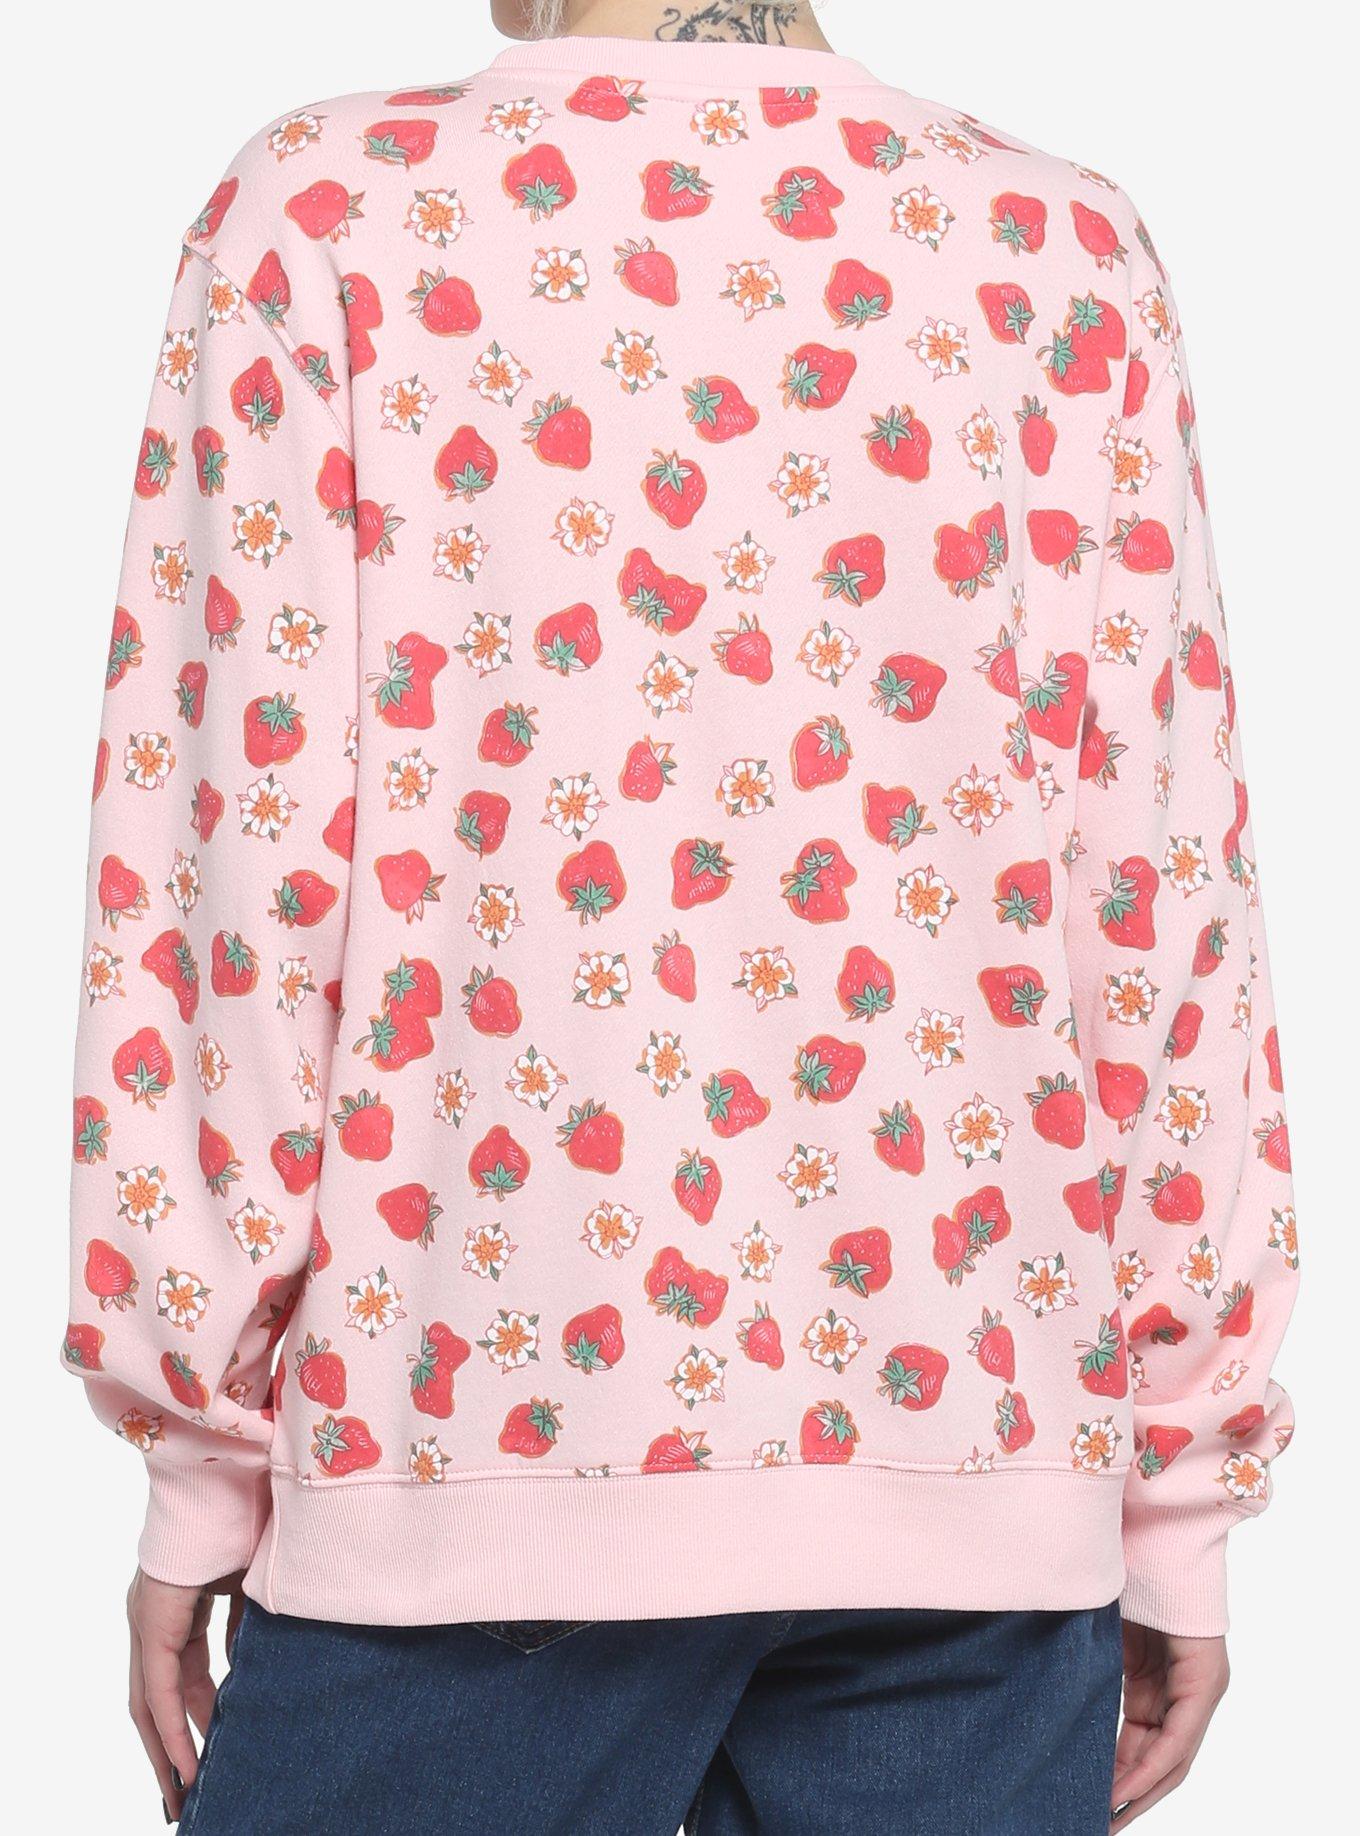 Strawberry Shortcake Flowers & Strawberries Girls Sweatshirt, MULTI, alternate